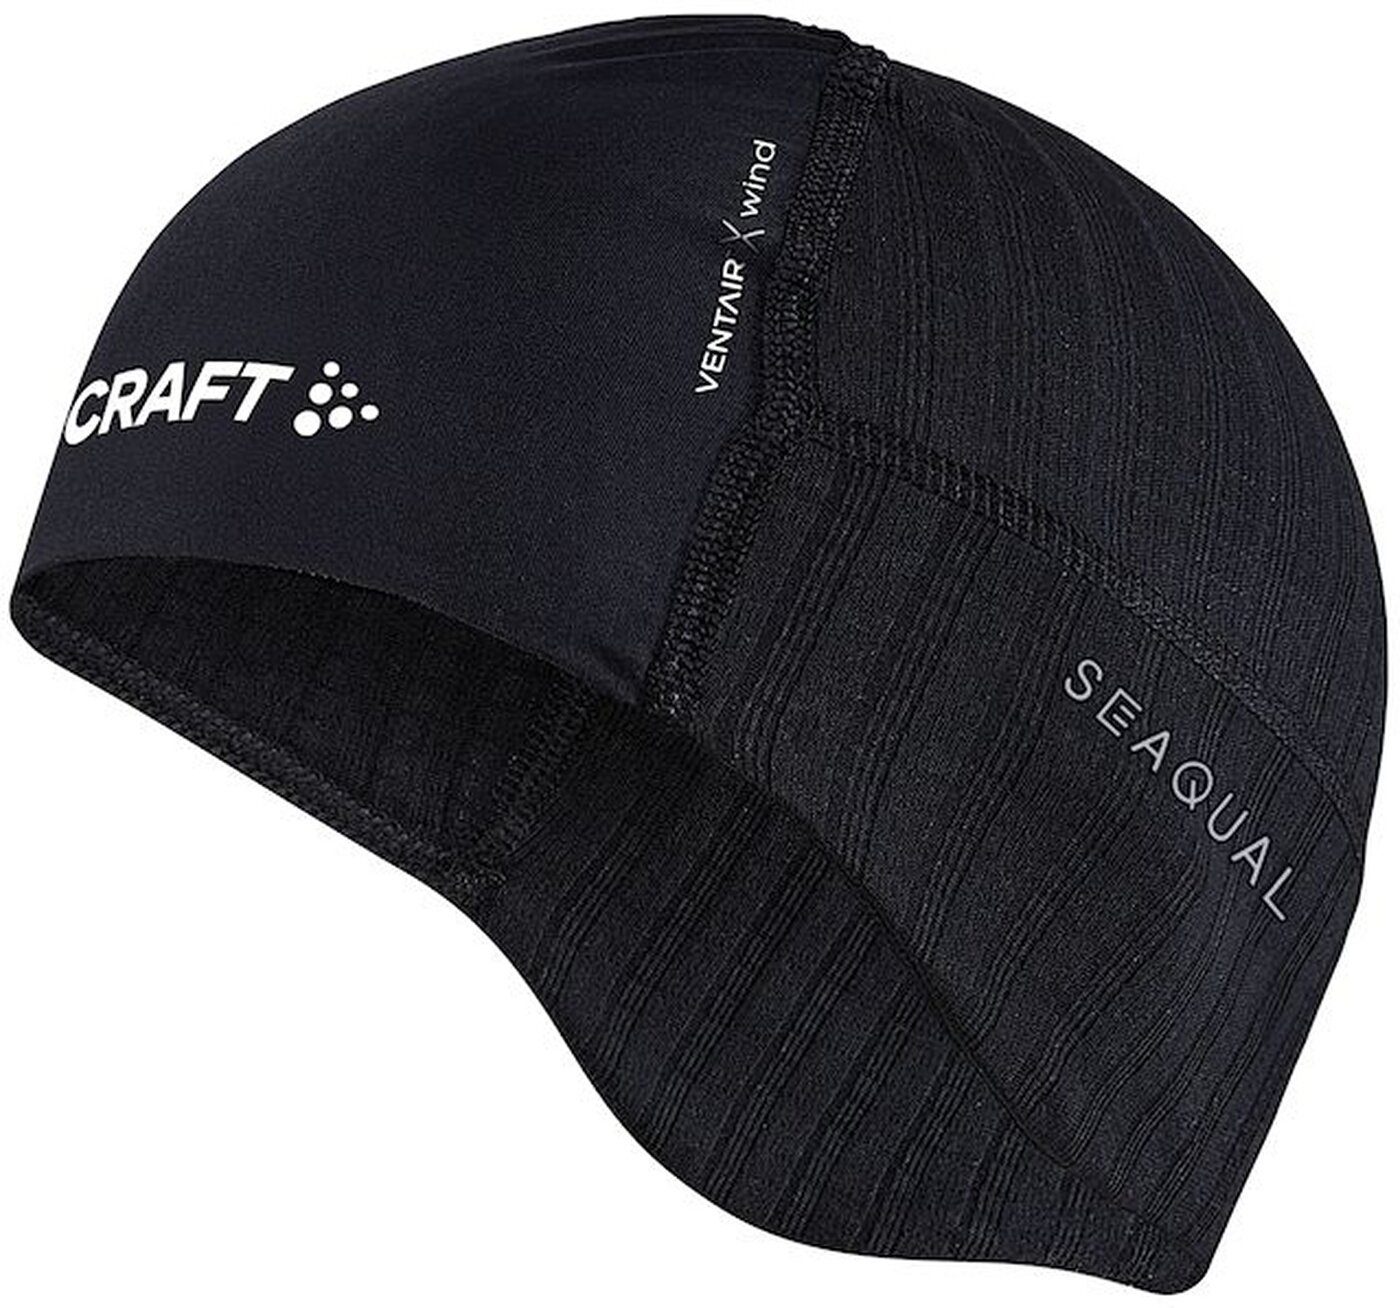 Craft Flex Cap ACTIVE EXTREME X WIND HAT Black/Granite | Flex Caps